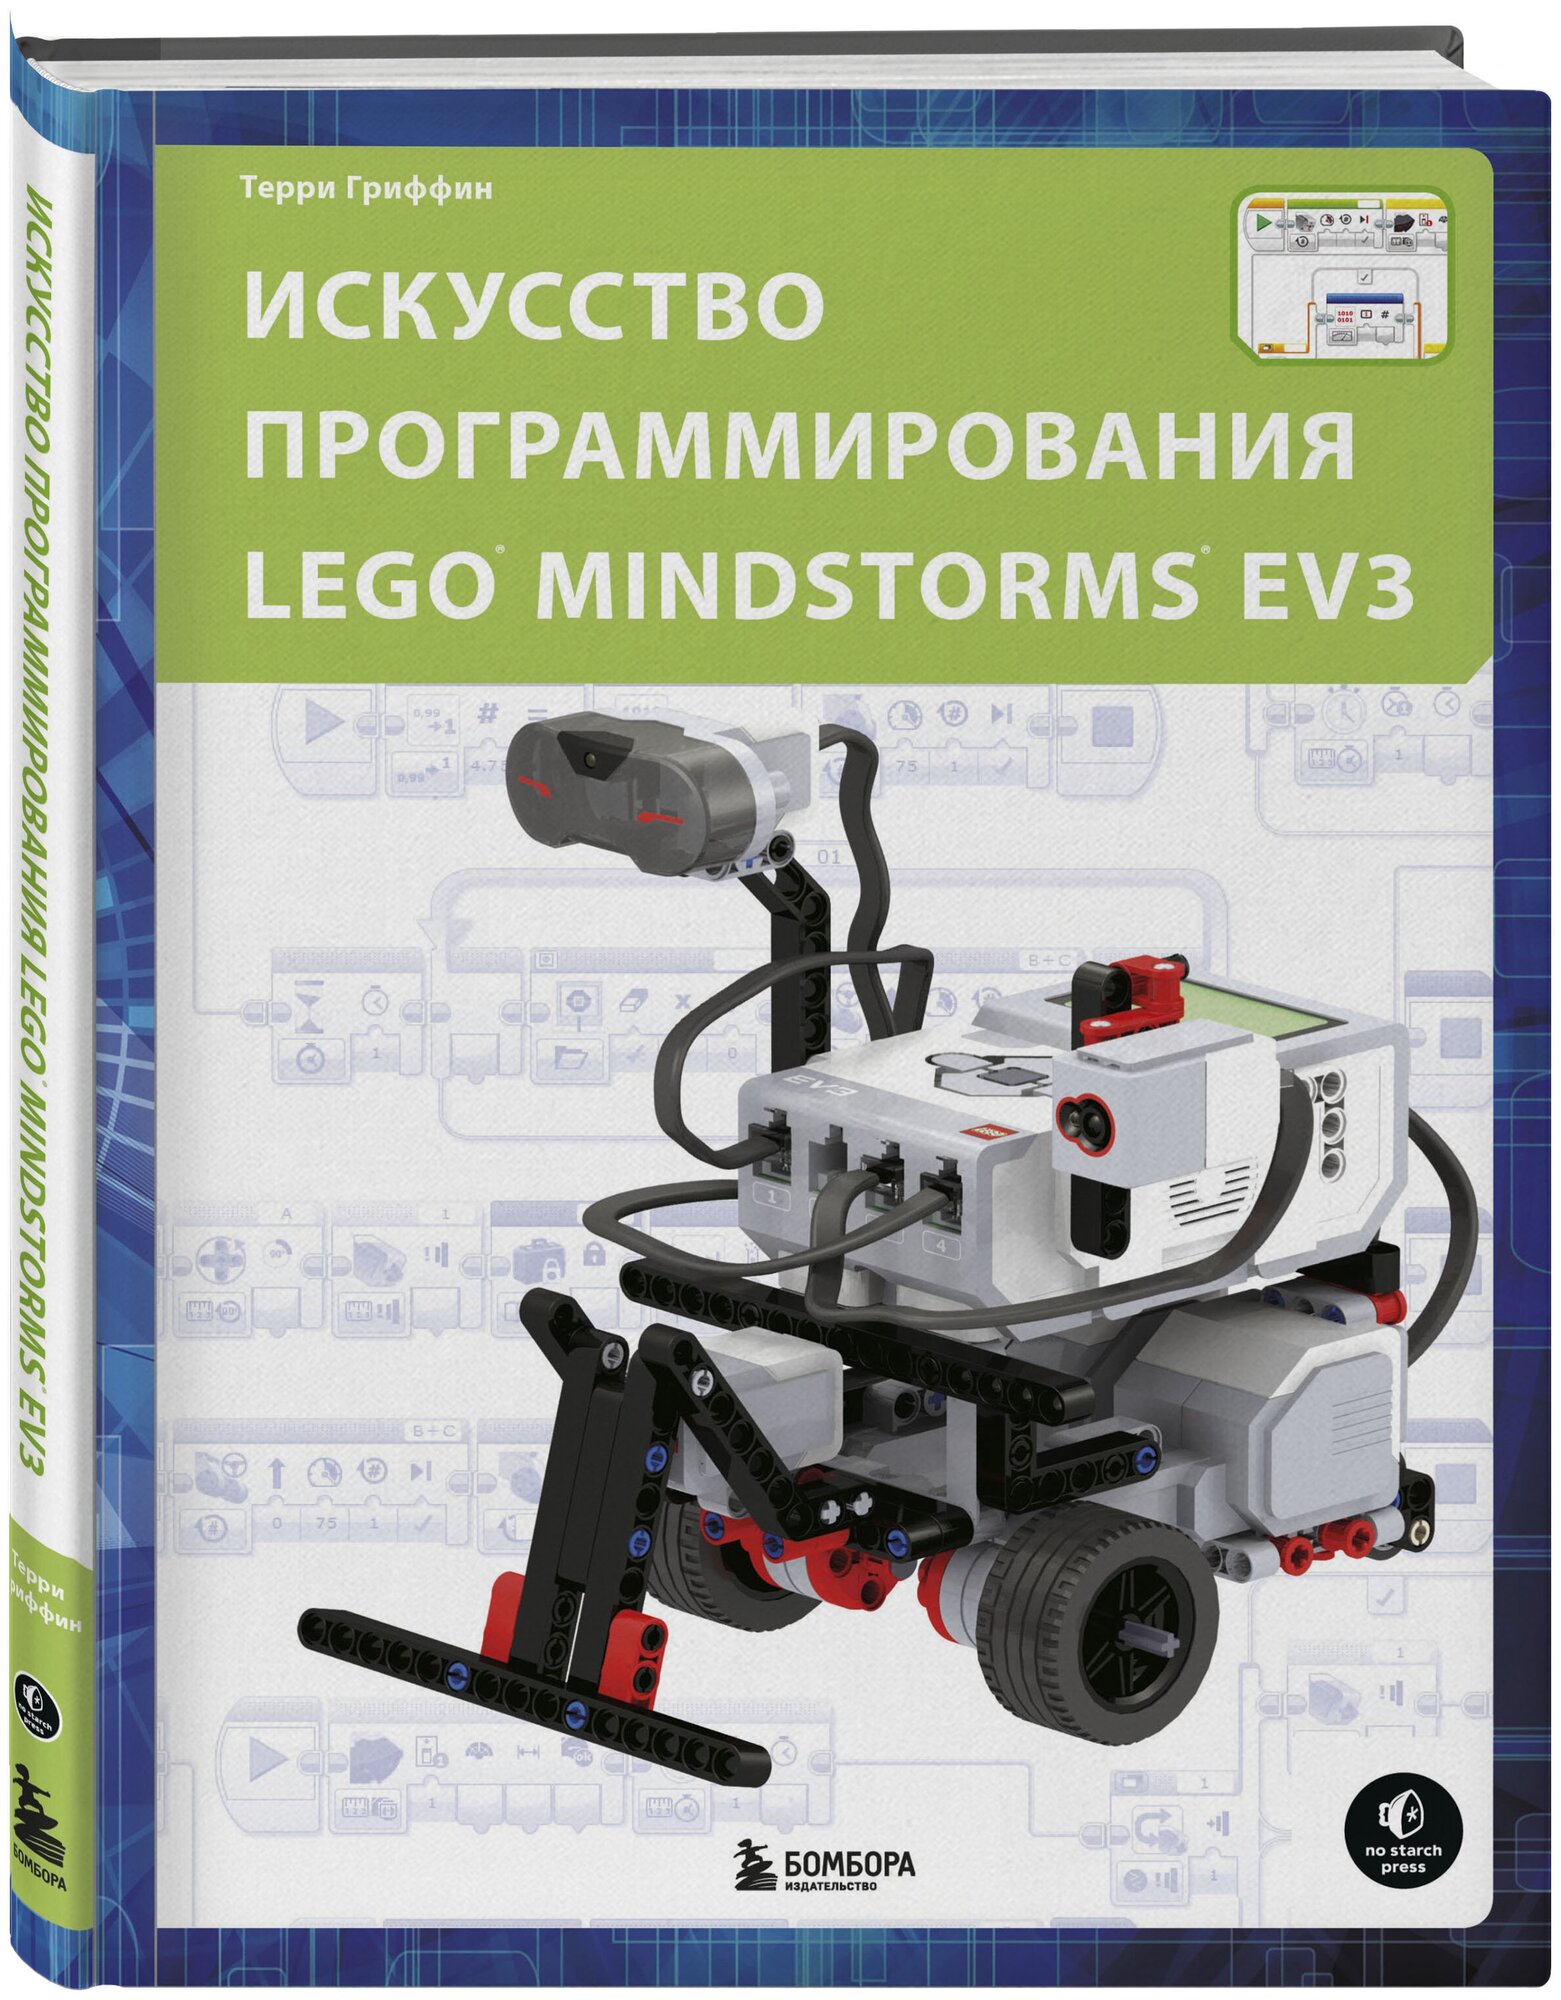 Гриффин Т. Искусство программирования LEGO MINDSTORMS EV3